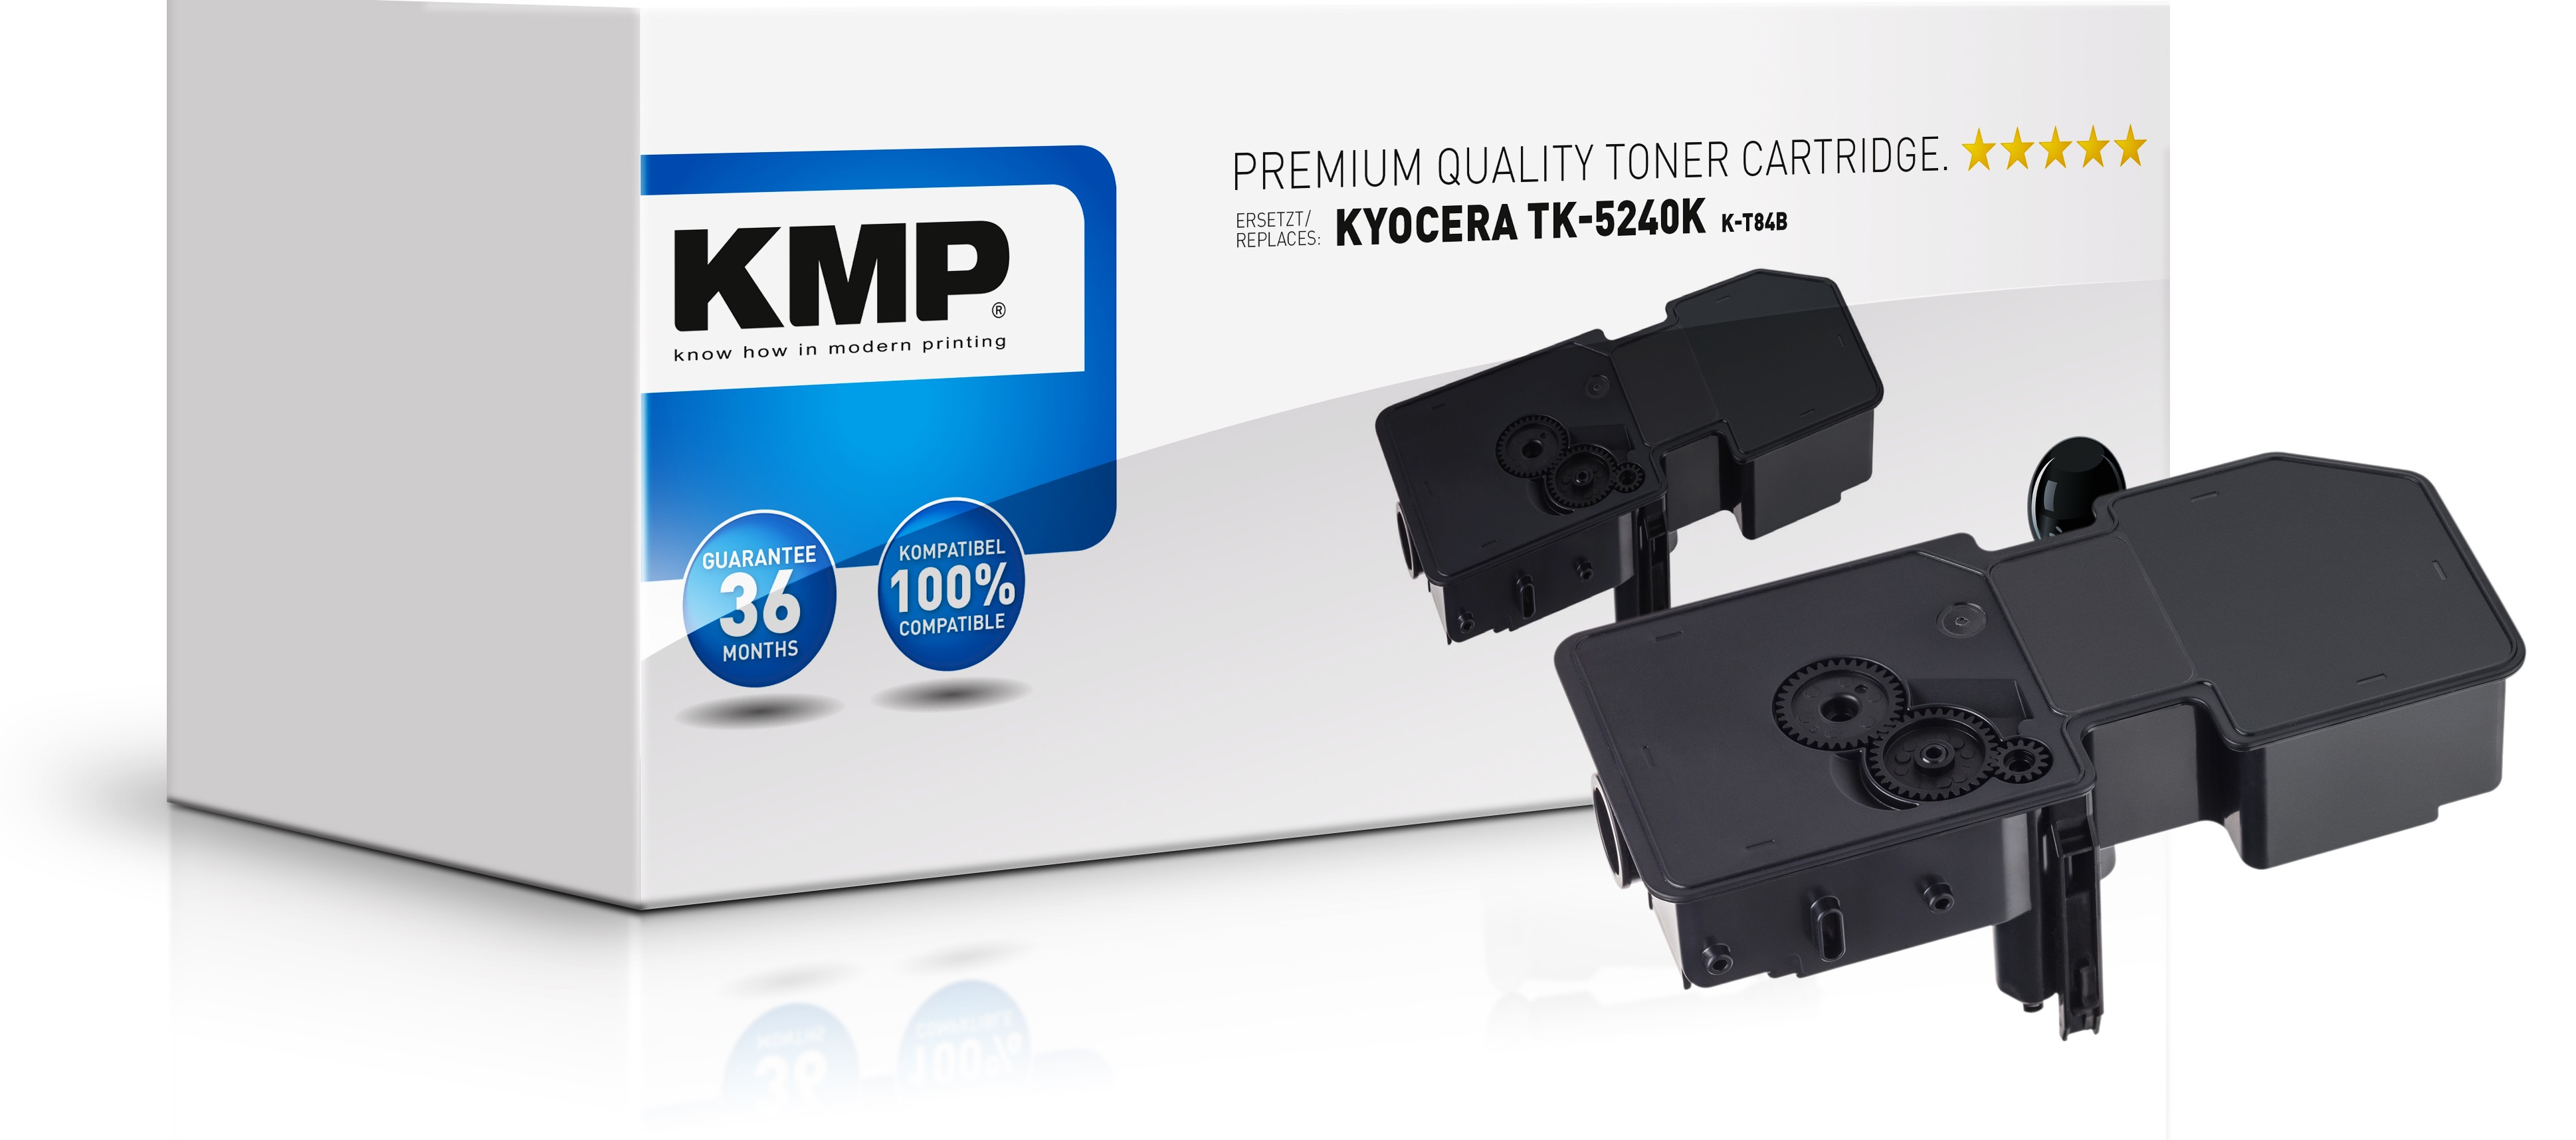 KMP K-T84B - 4000 Seiten - Schwarz - 1 Stück(e)